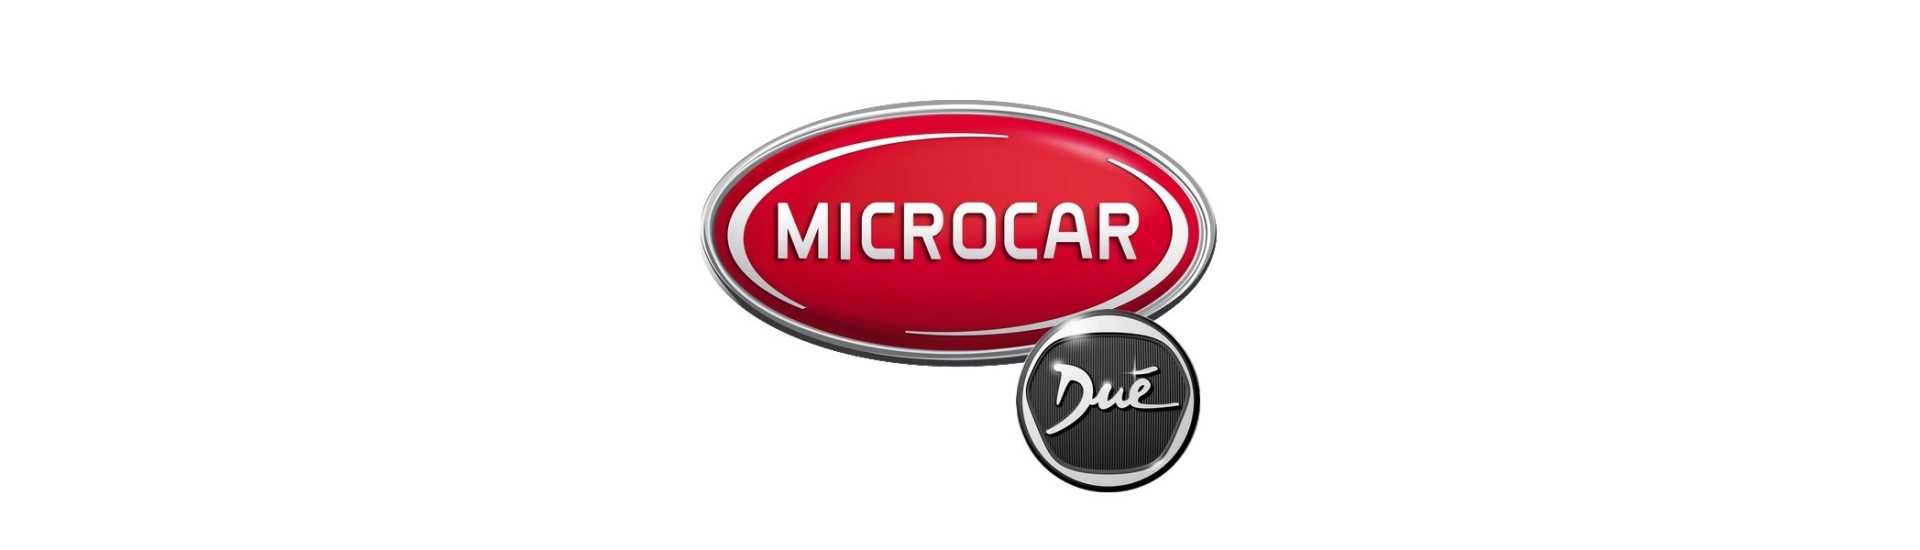 Bestes Preis für Auto ohne Lizenz Microcar Dué